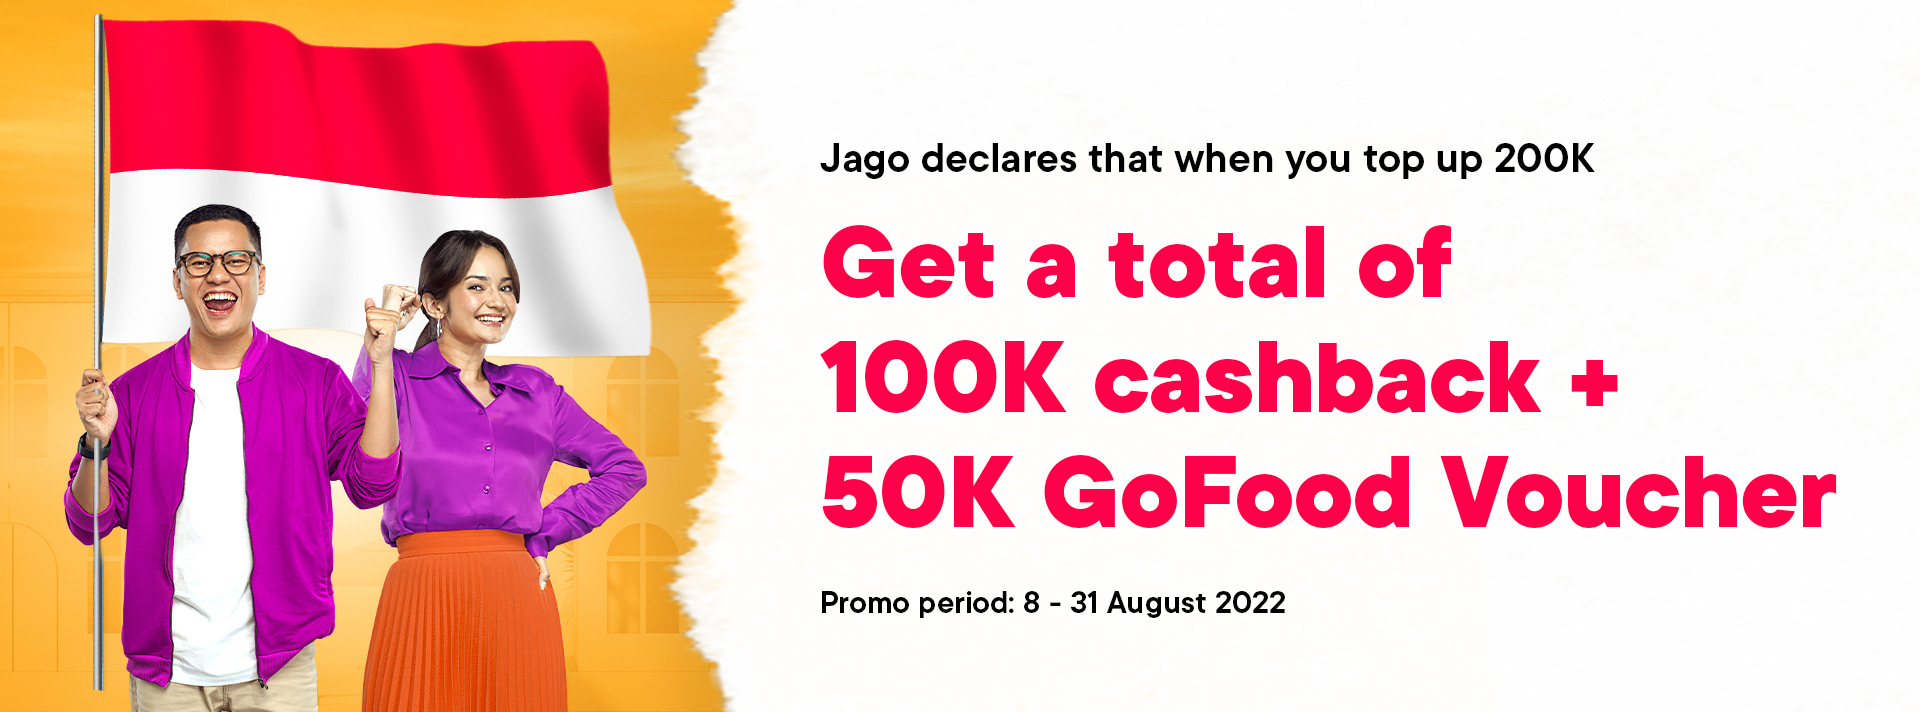 Jago Agustusan - Jago declares that when you top up 200k